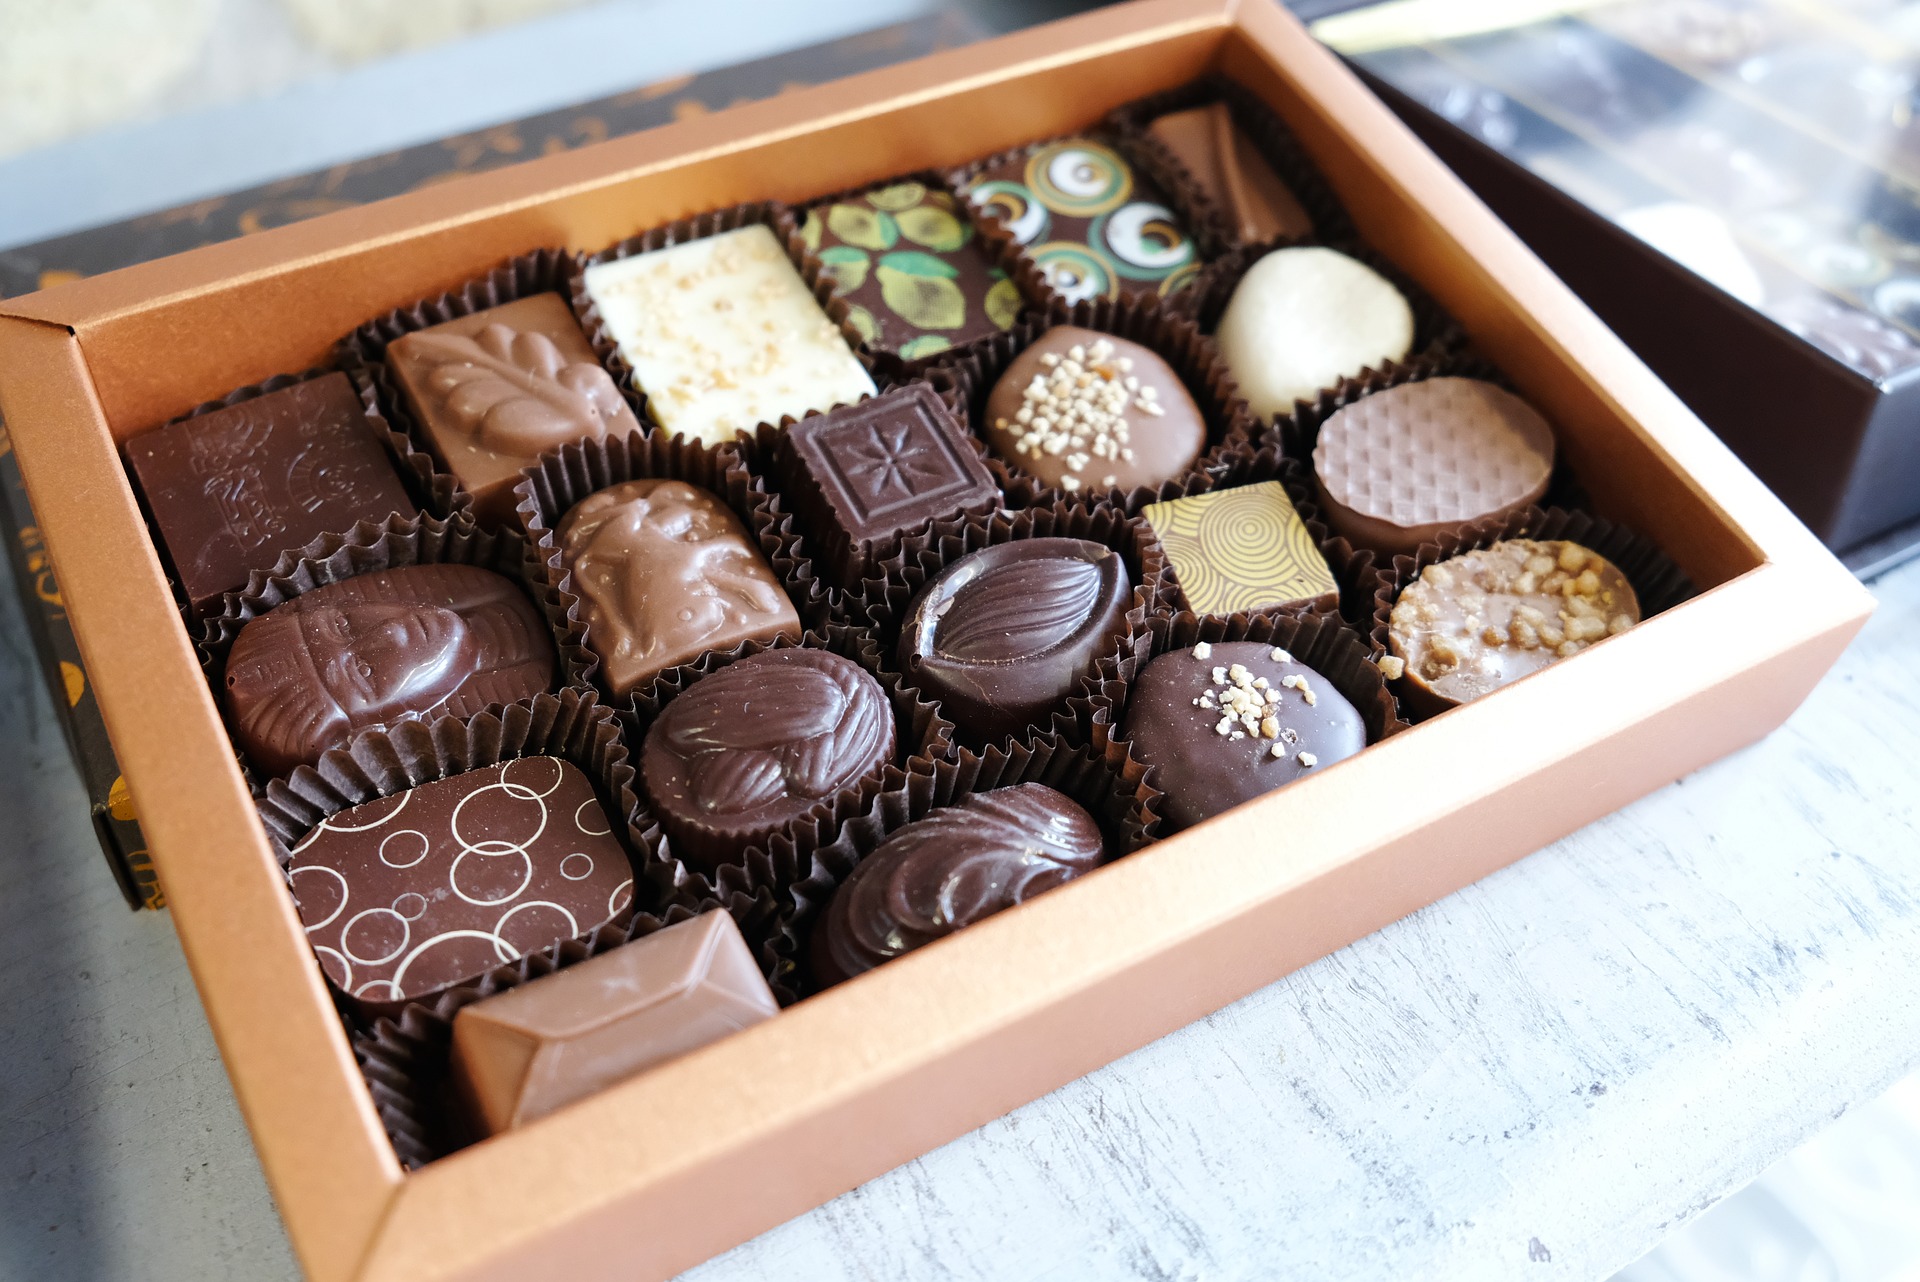 Schelden Bungalow wimper Belgische chocolade: 650 ton verkocht per jaar - Brussels By Foot